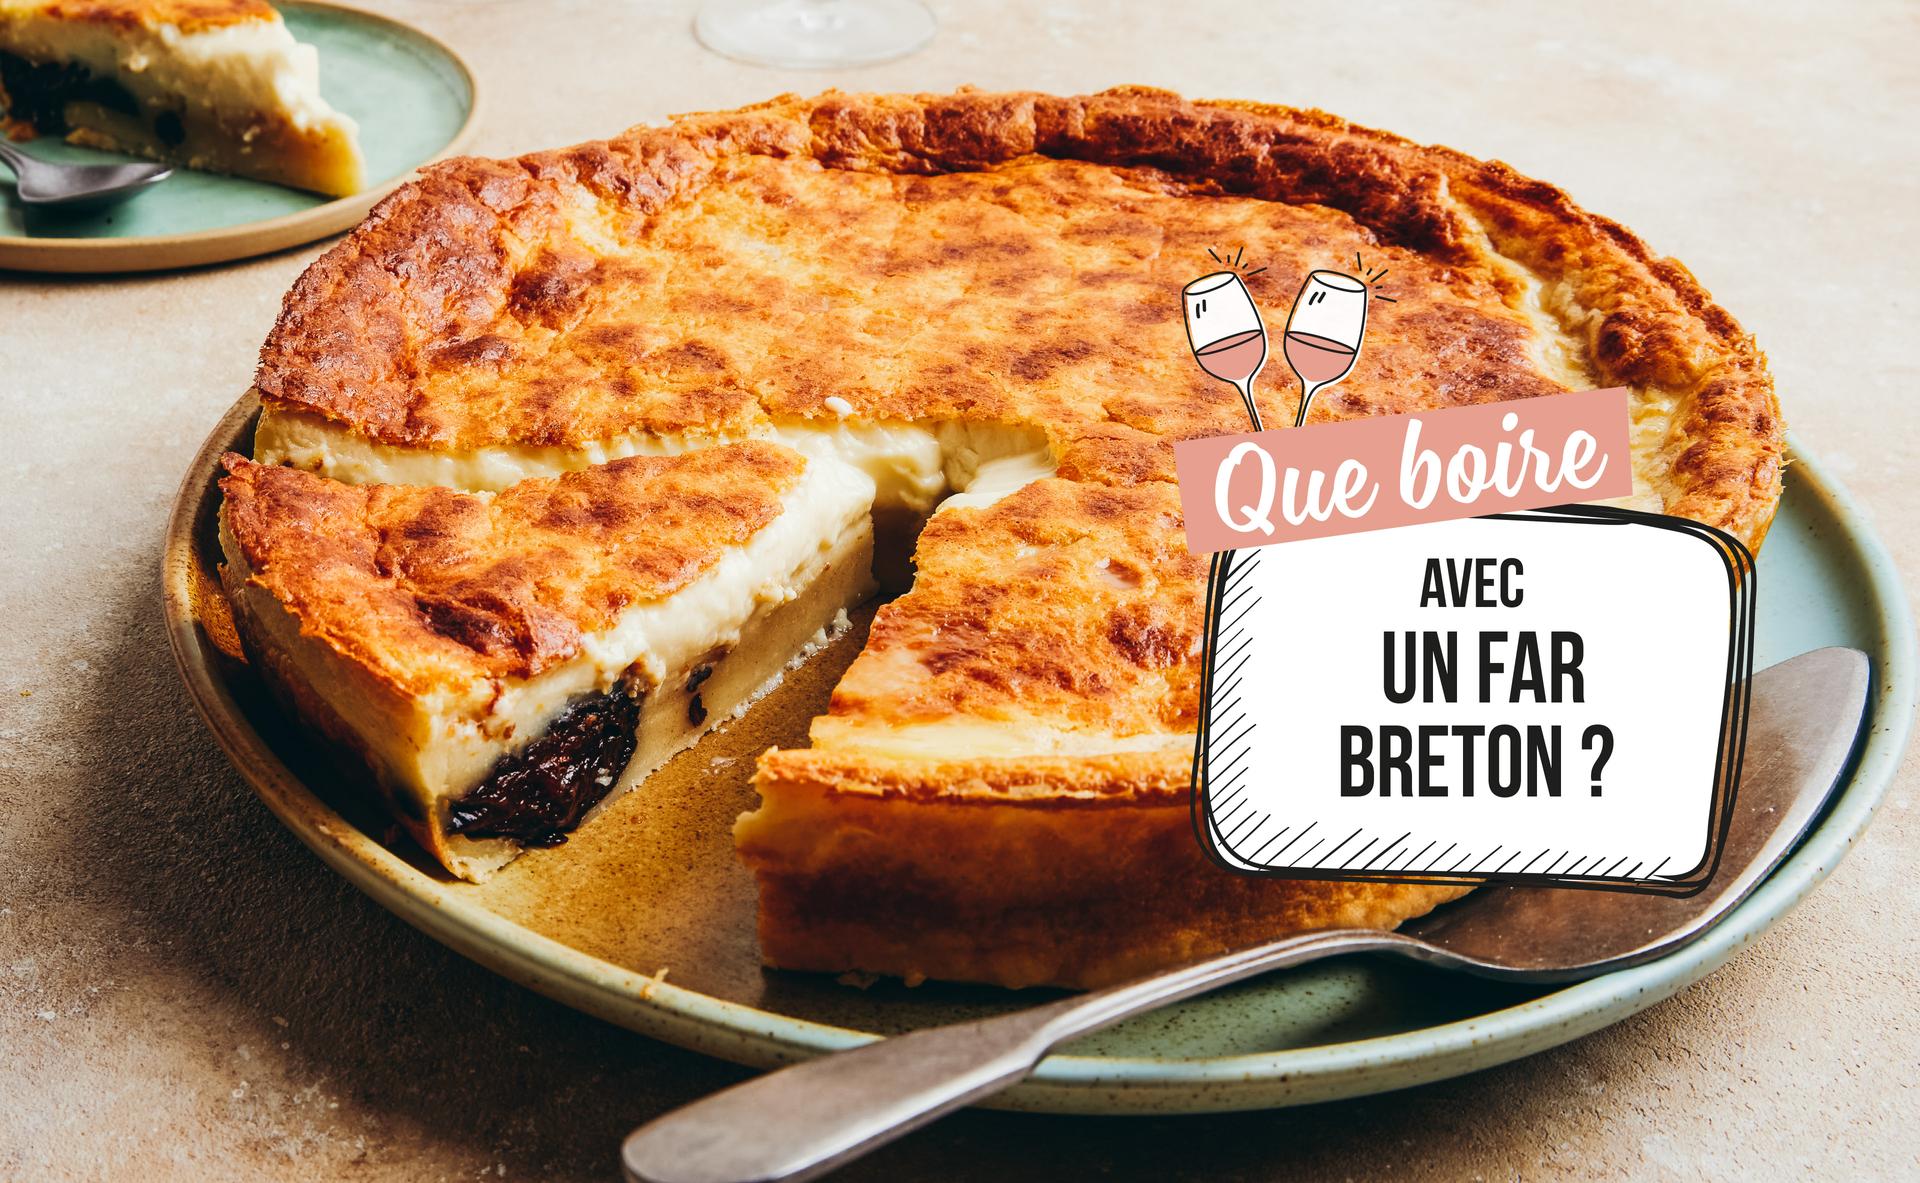 Que boire avec un far breton ?